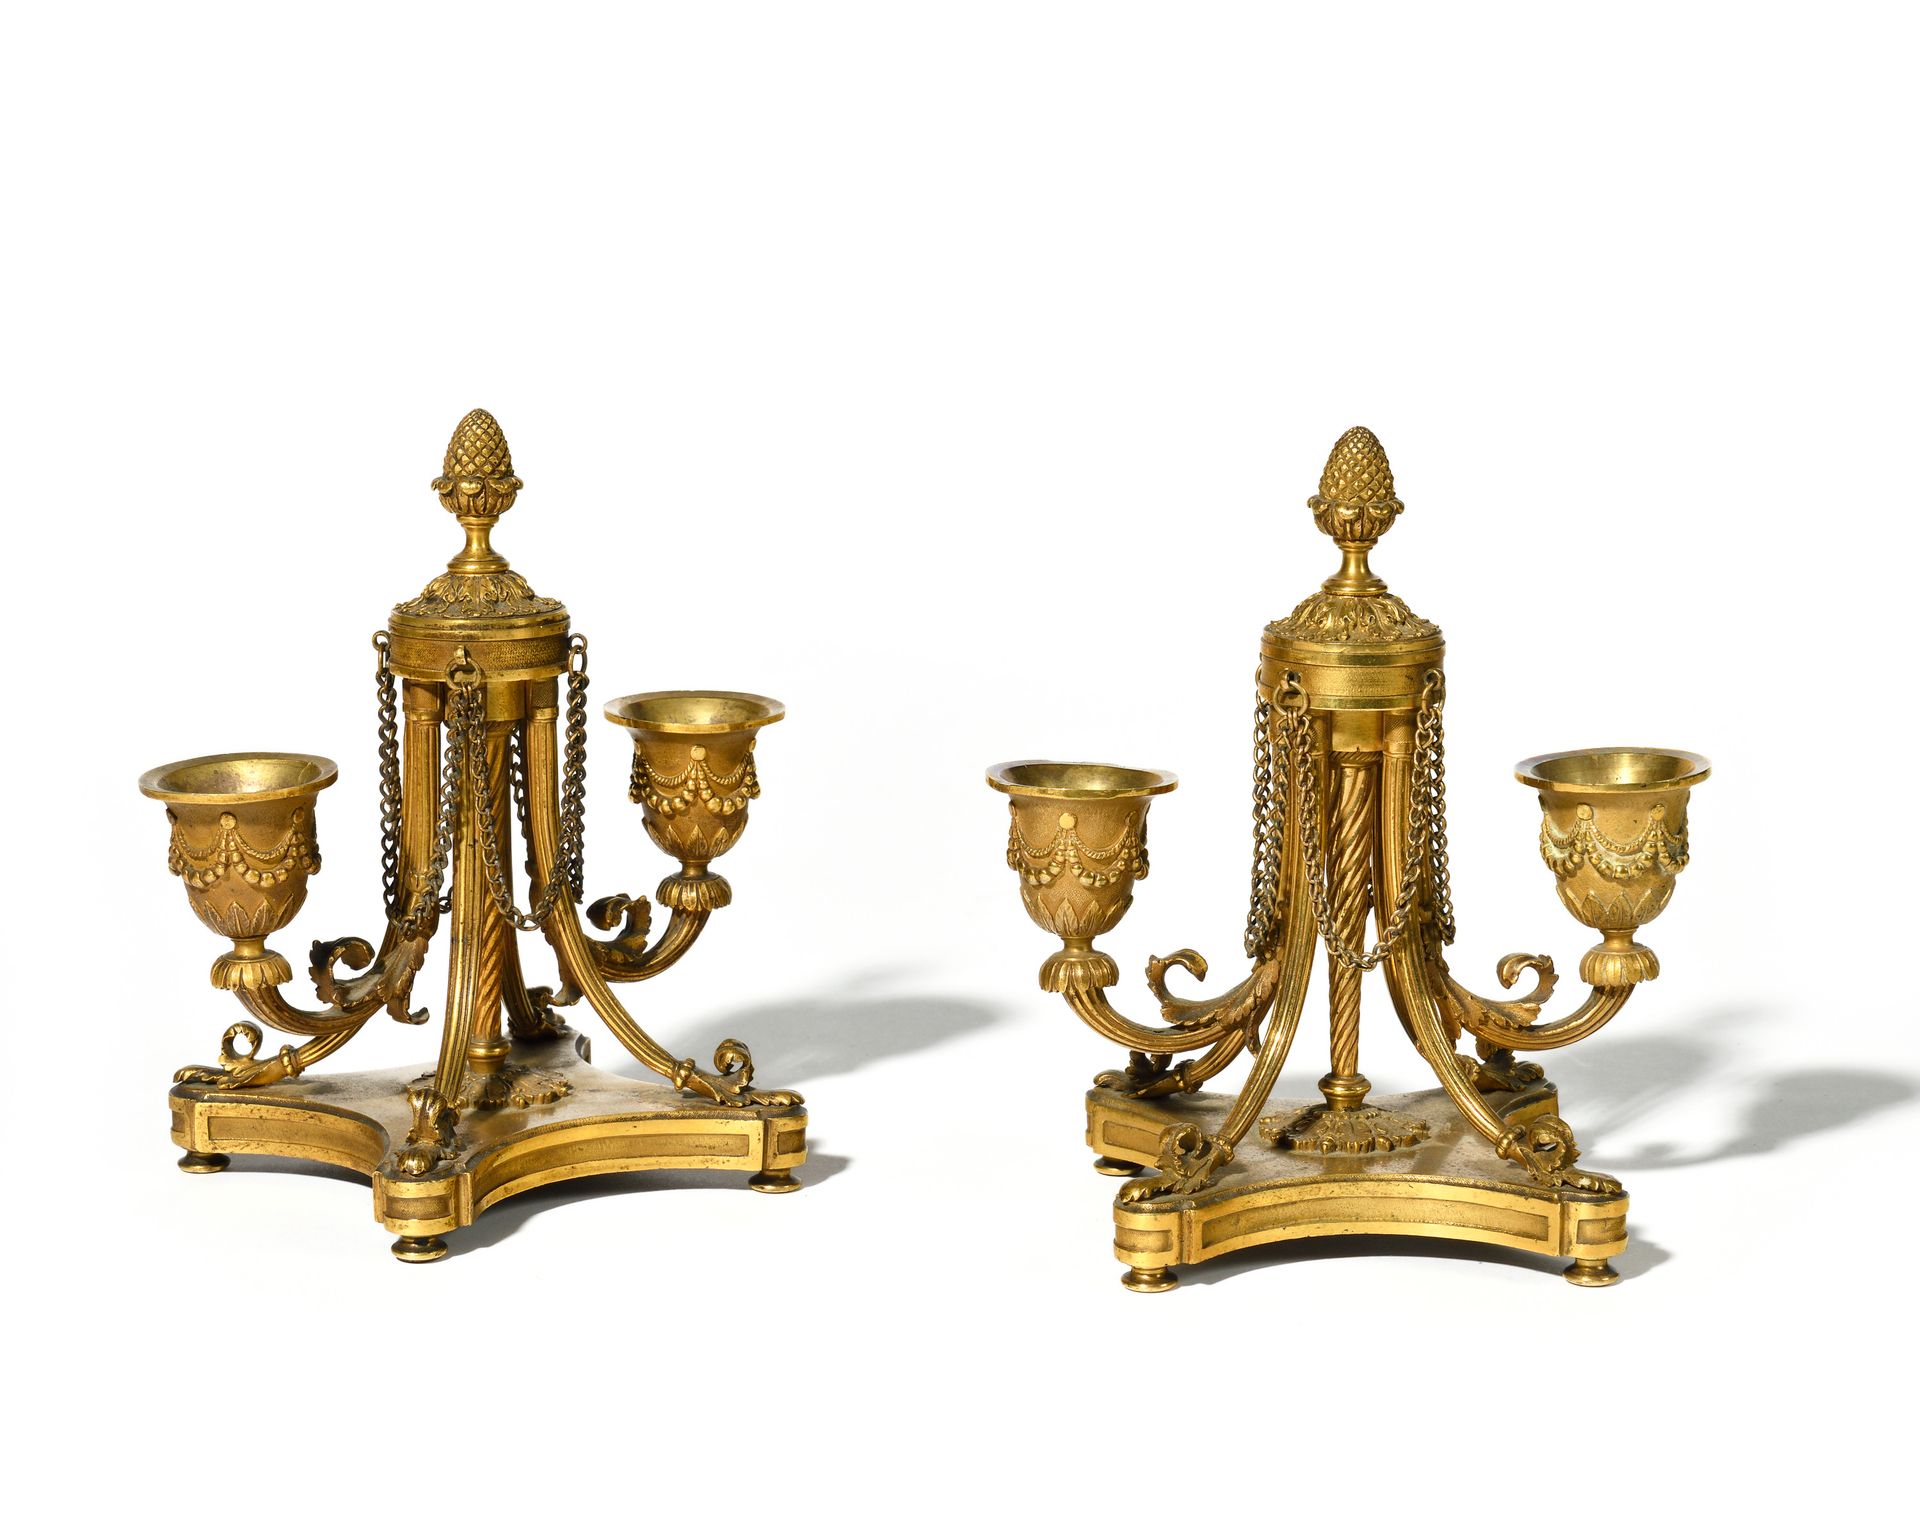 Null 一对双灯小烛台
镀金青铜烛台，烛台上饰有松果和刺桐叶，中央卷轴位于四足底座和米歇腿上。
路易十六风格，拿破仑三世时期
高：18 厘米；宽：15 厘米